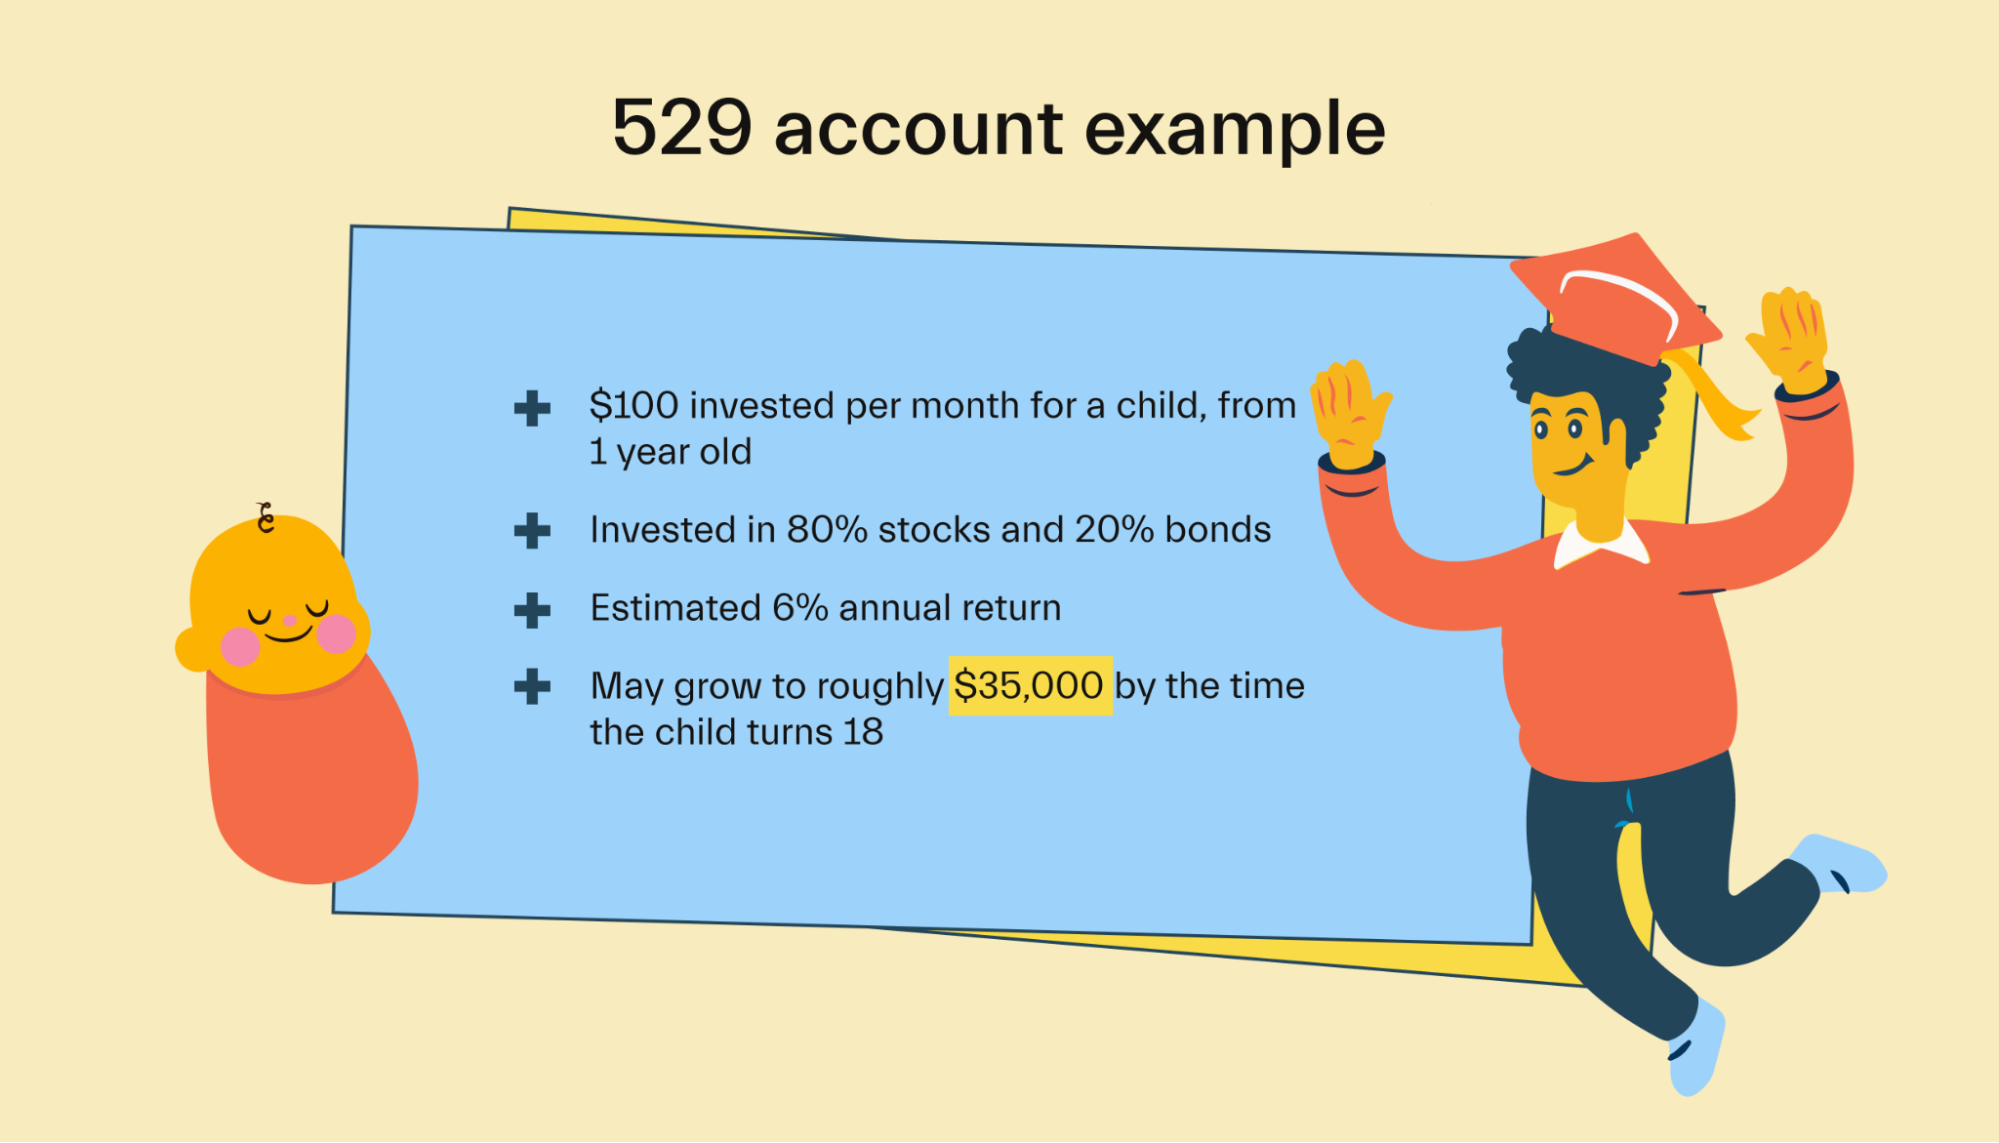 529 account example